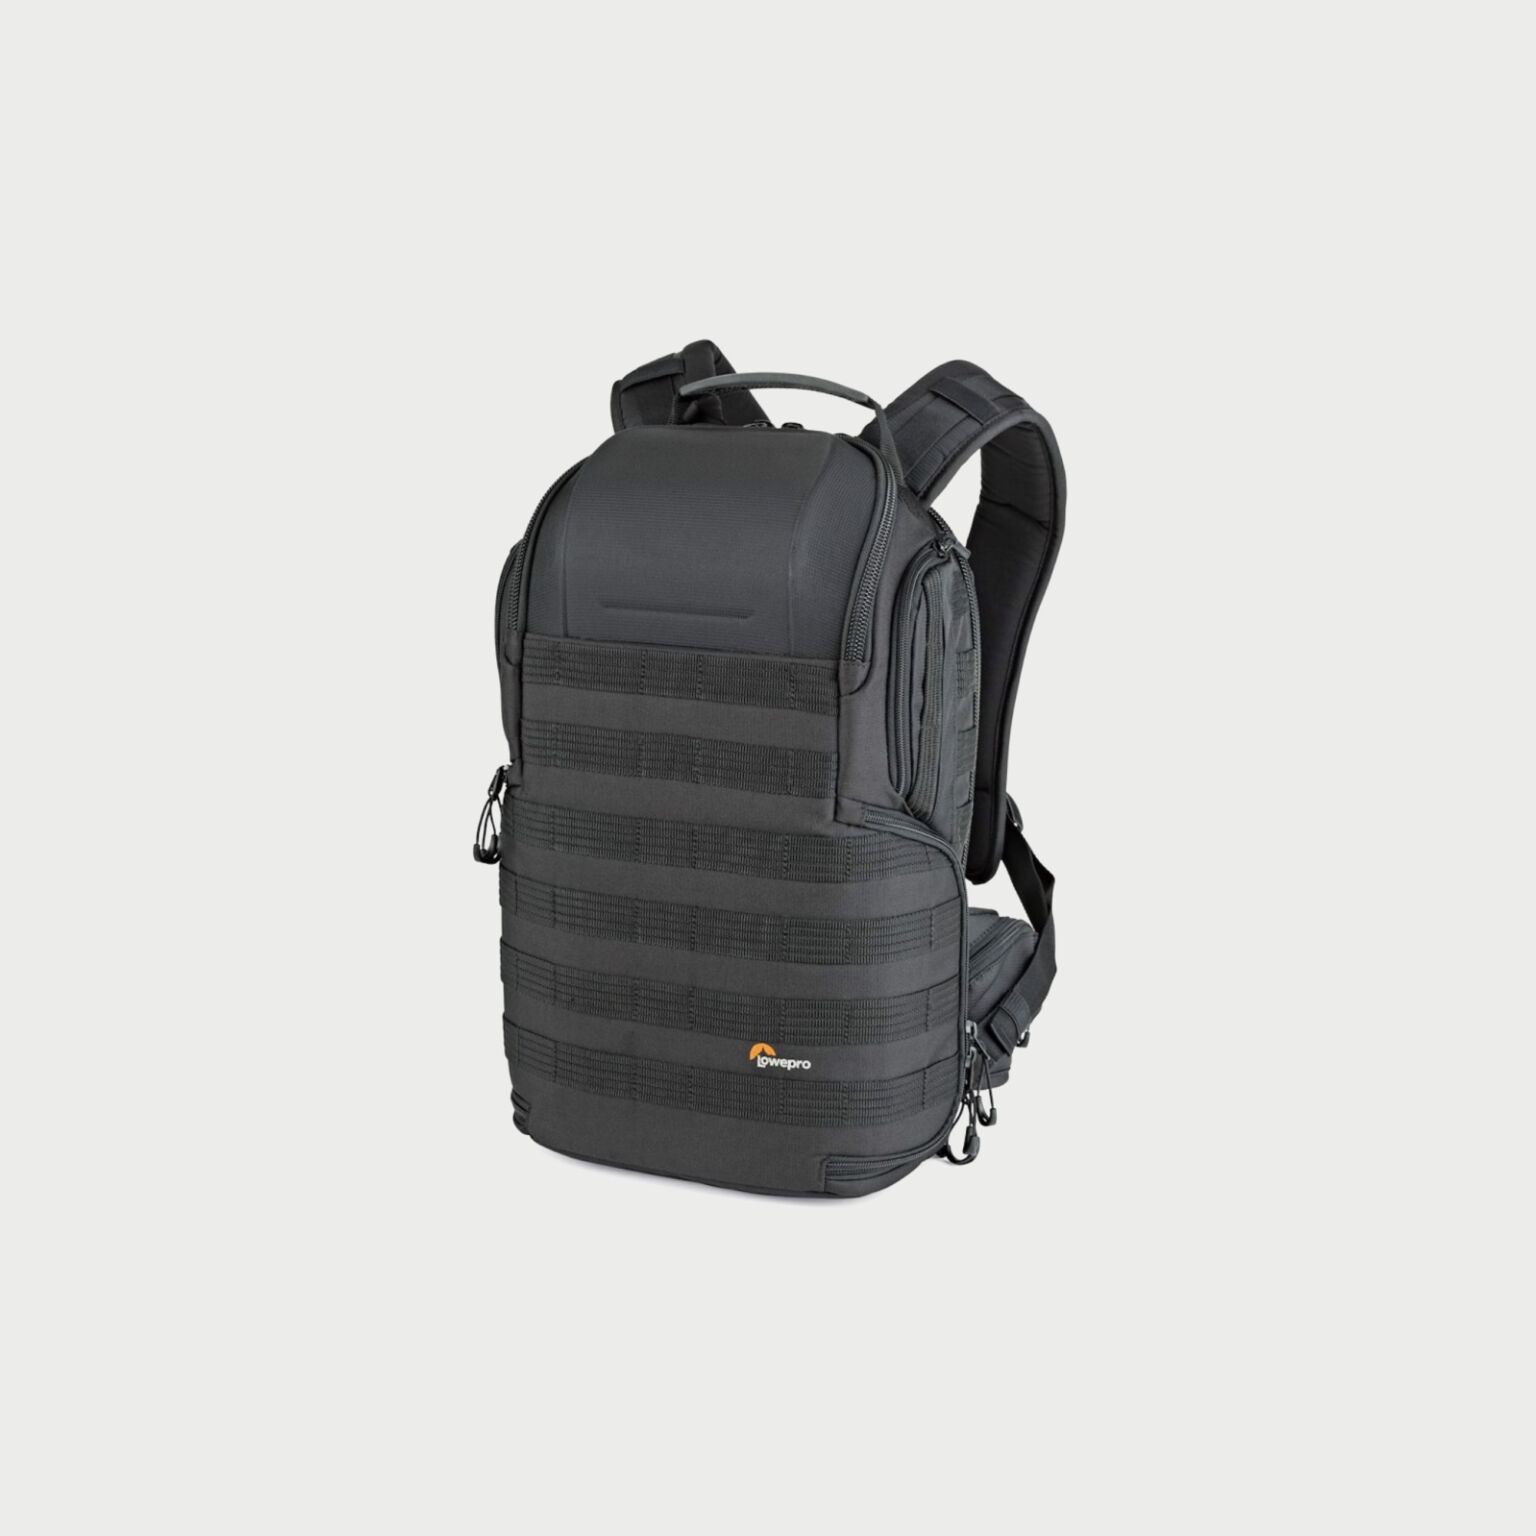 Lowepro Protactic Bp 350 Aw Ii Backpack Black